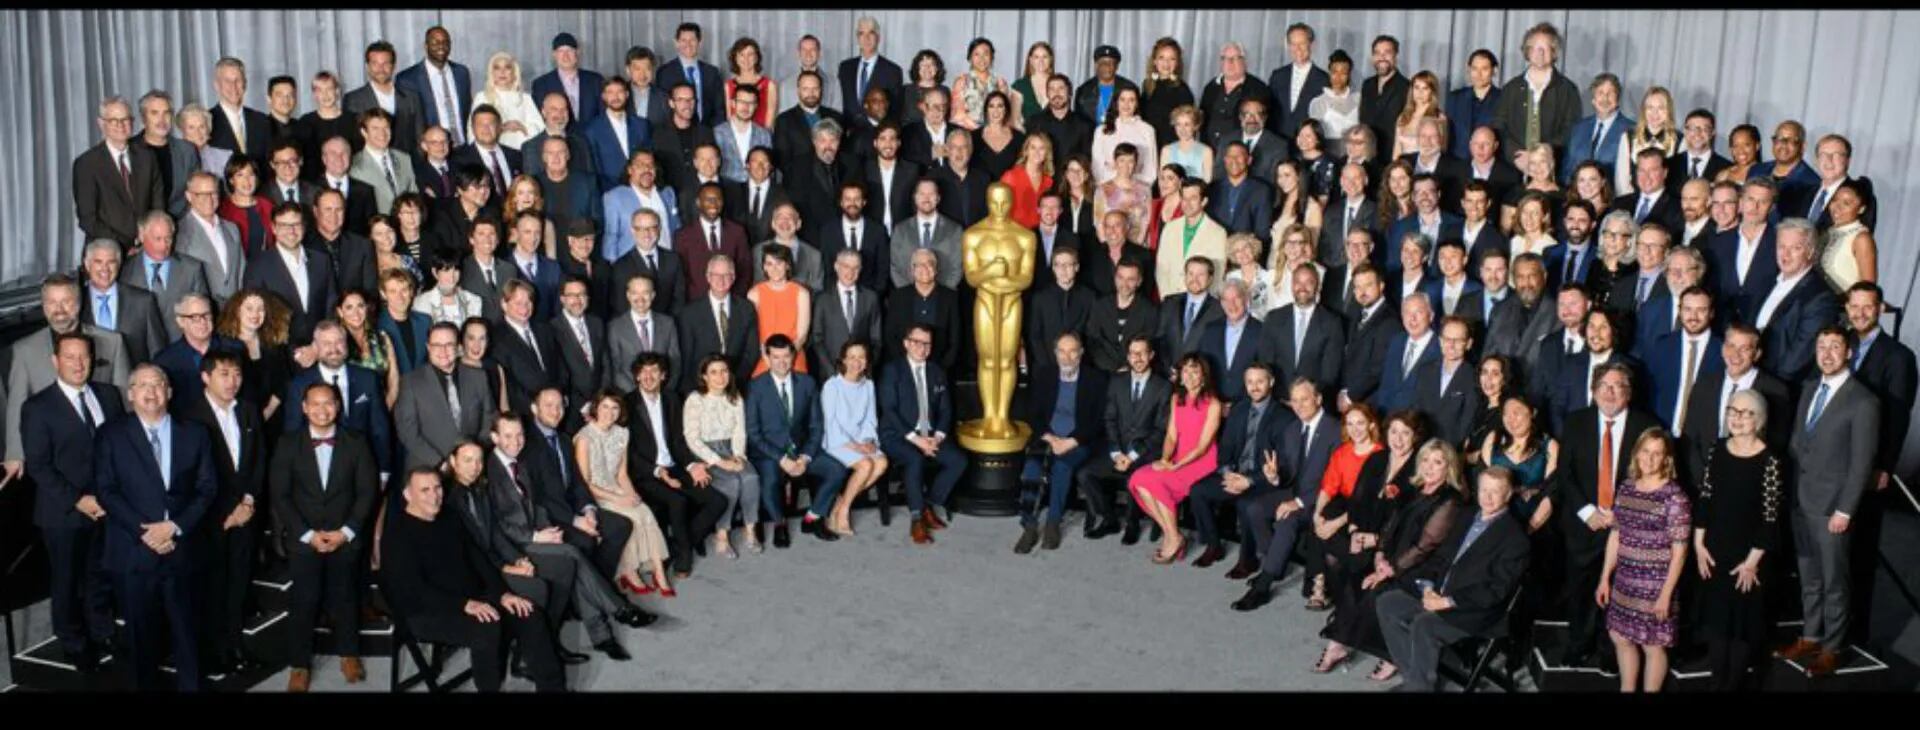 Todos los nominados a los Oscar 2019 en el almuerzo que organiza la Academia de artes y ciencias cinematográficas para celebrarlos